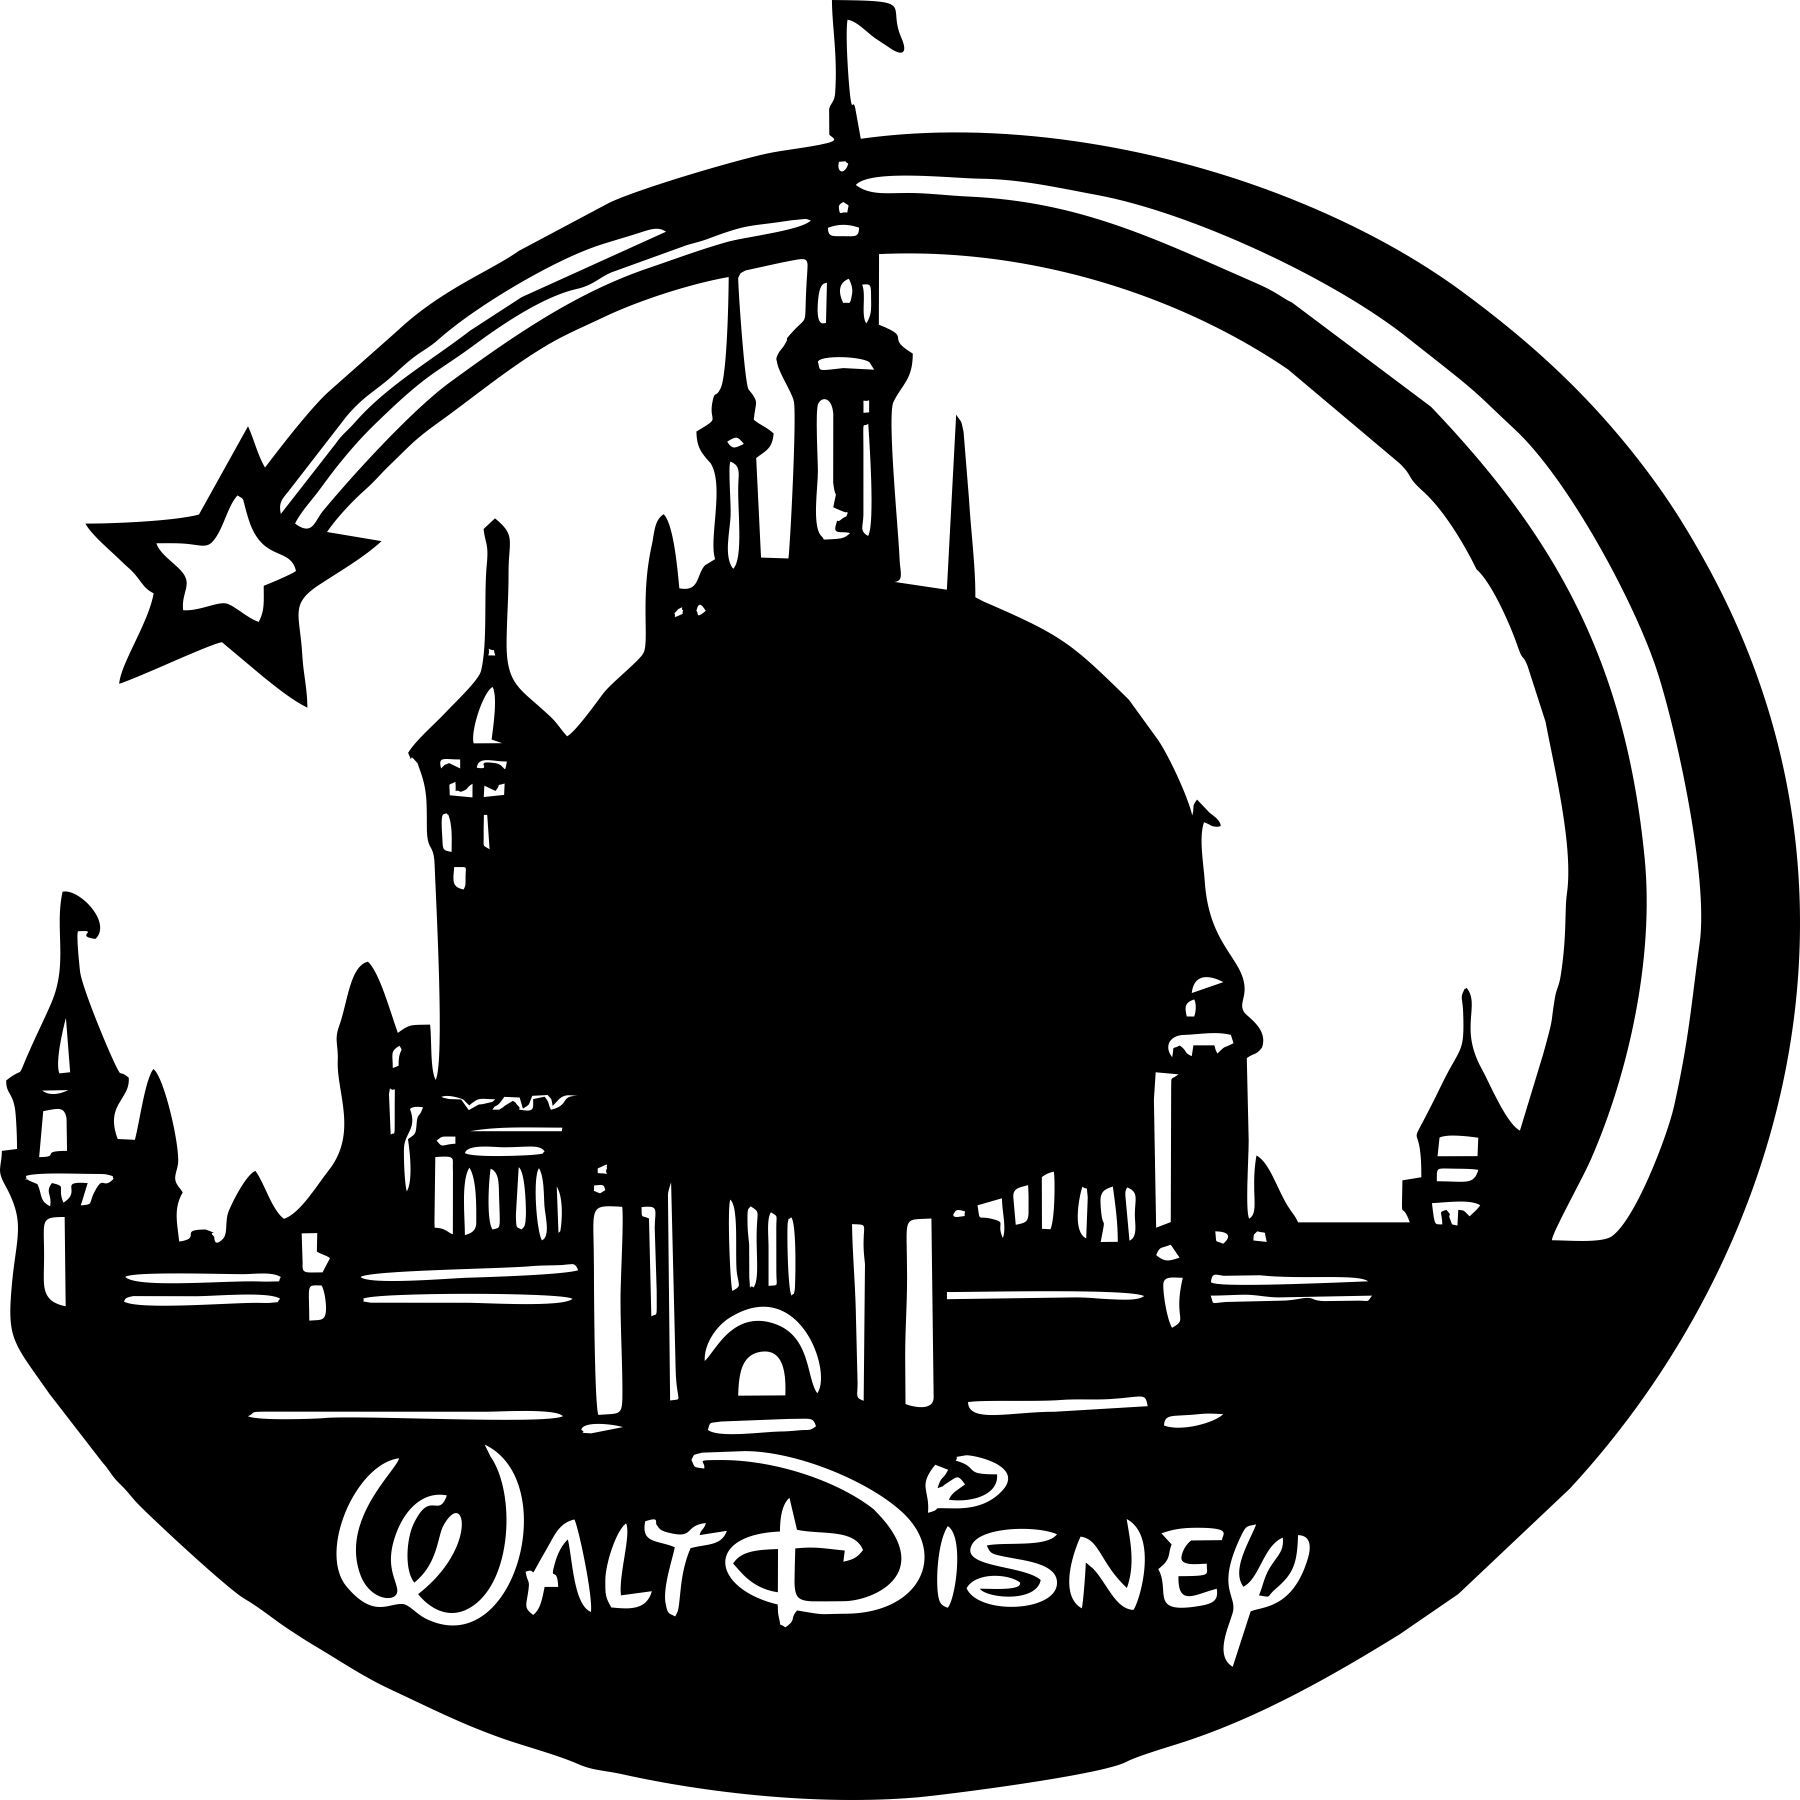 Download Walt Disney Vinyl Wall Clock Free Vector cdr Download ...